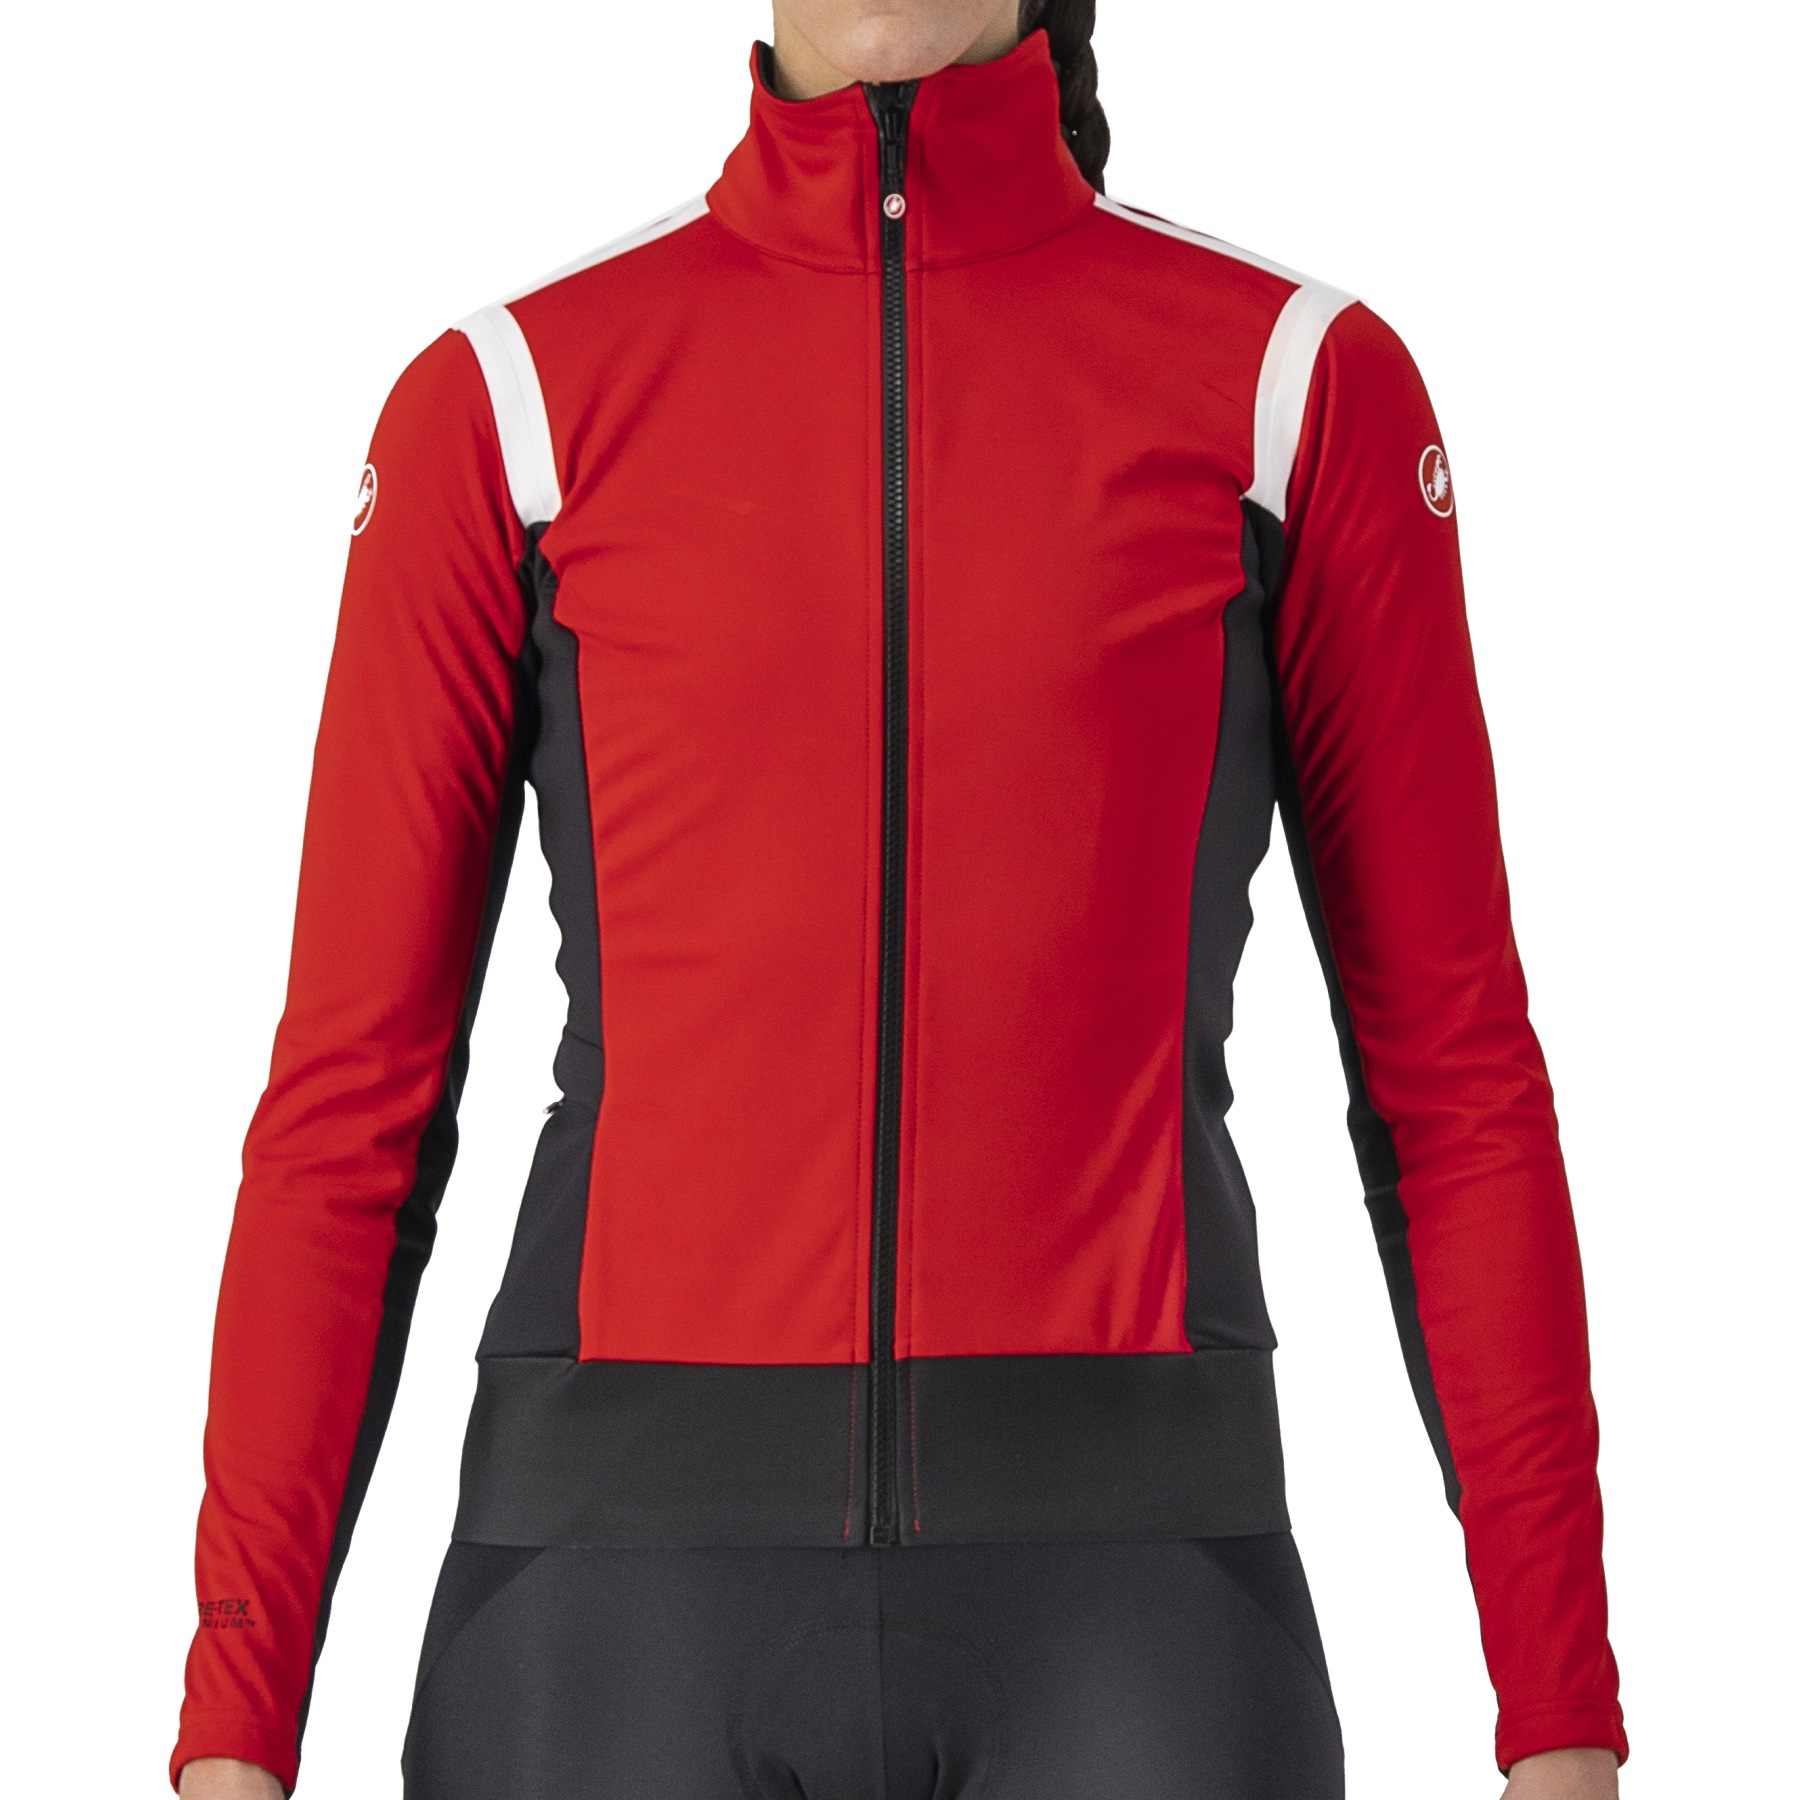 Produktbild von Castelli Alpha RoS 2 Light Jacke Damen - rot/schwarz-weiß 023